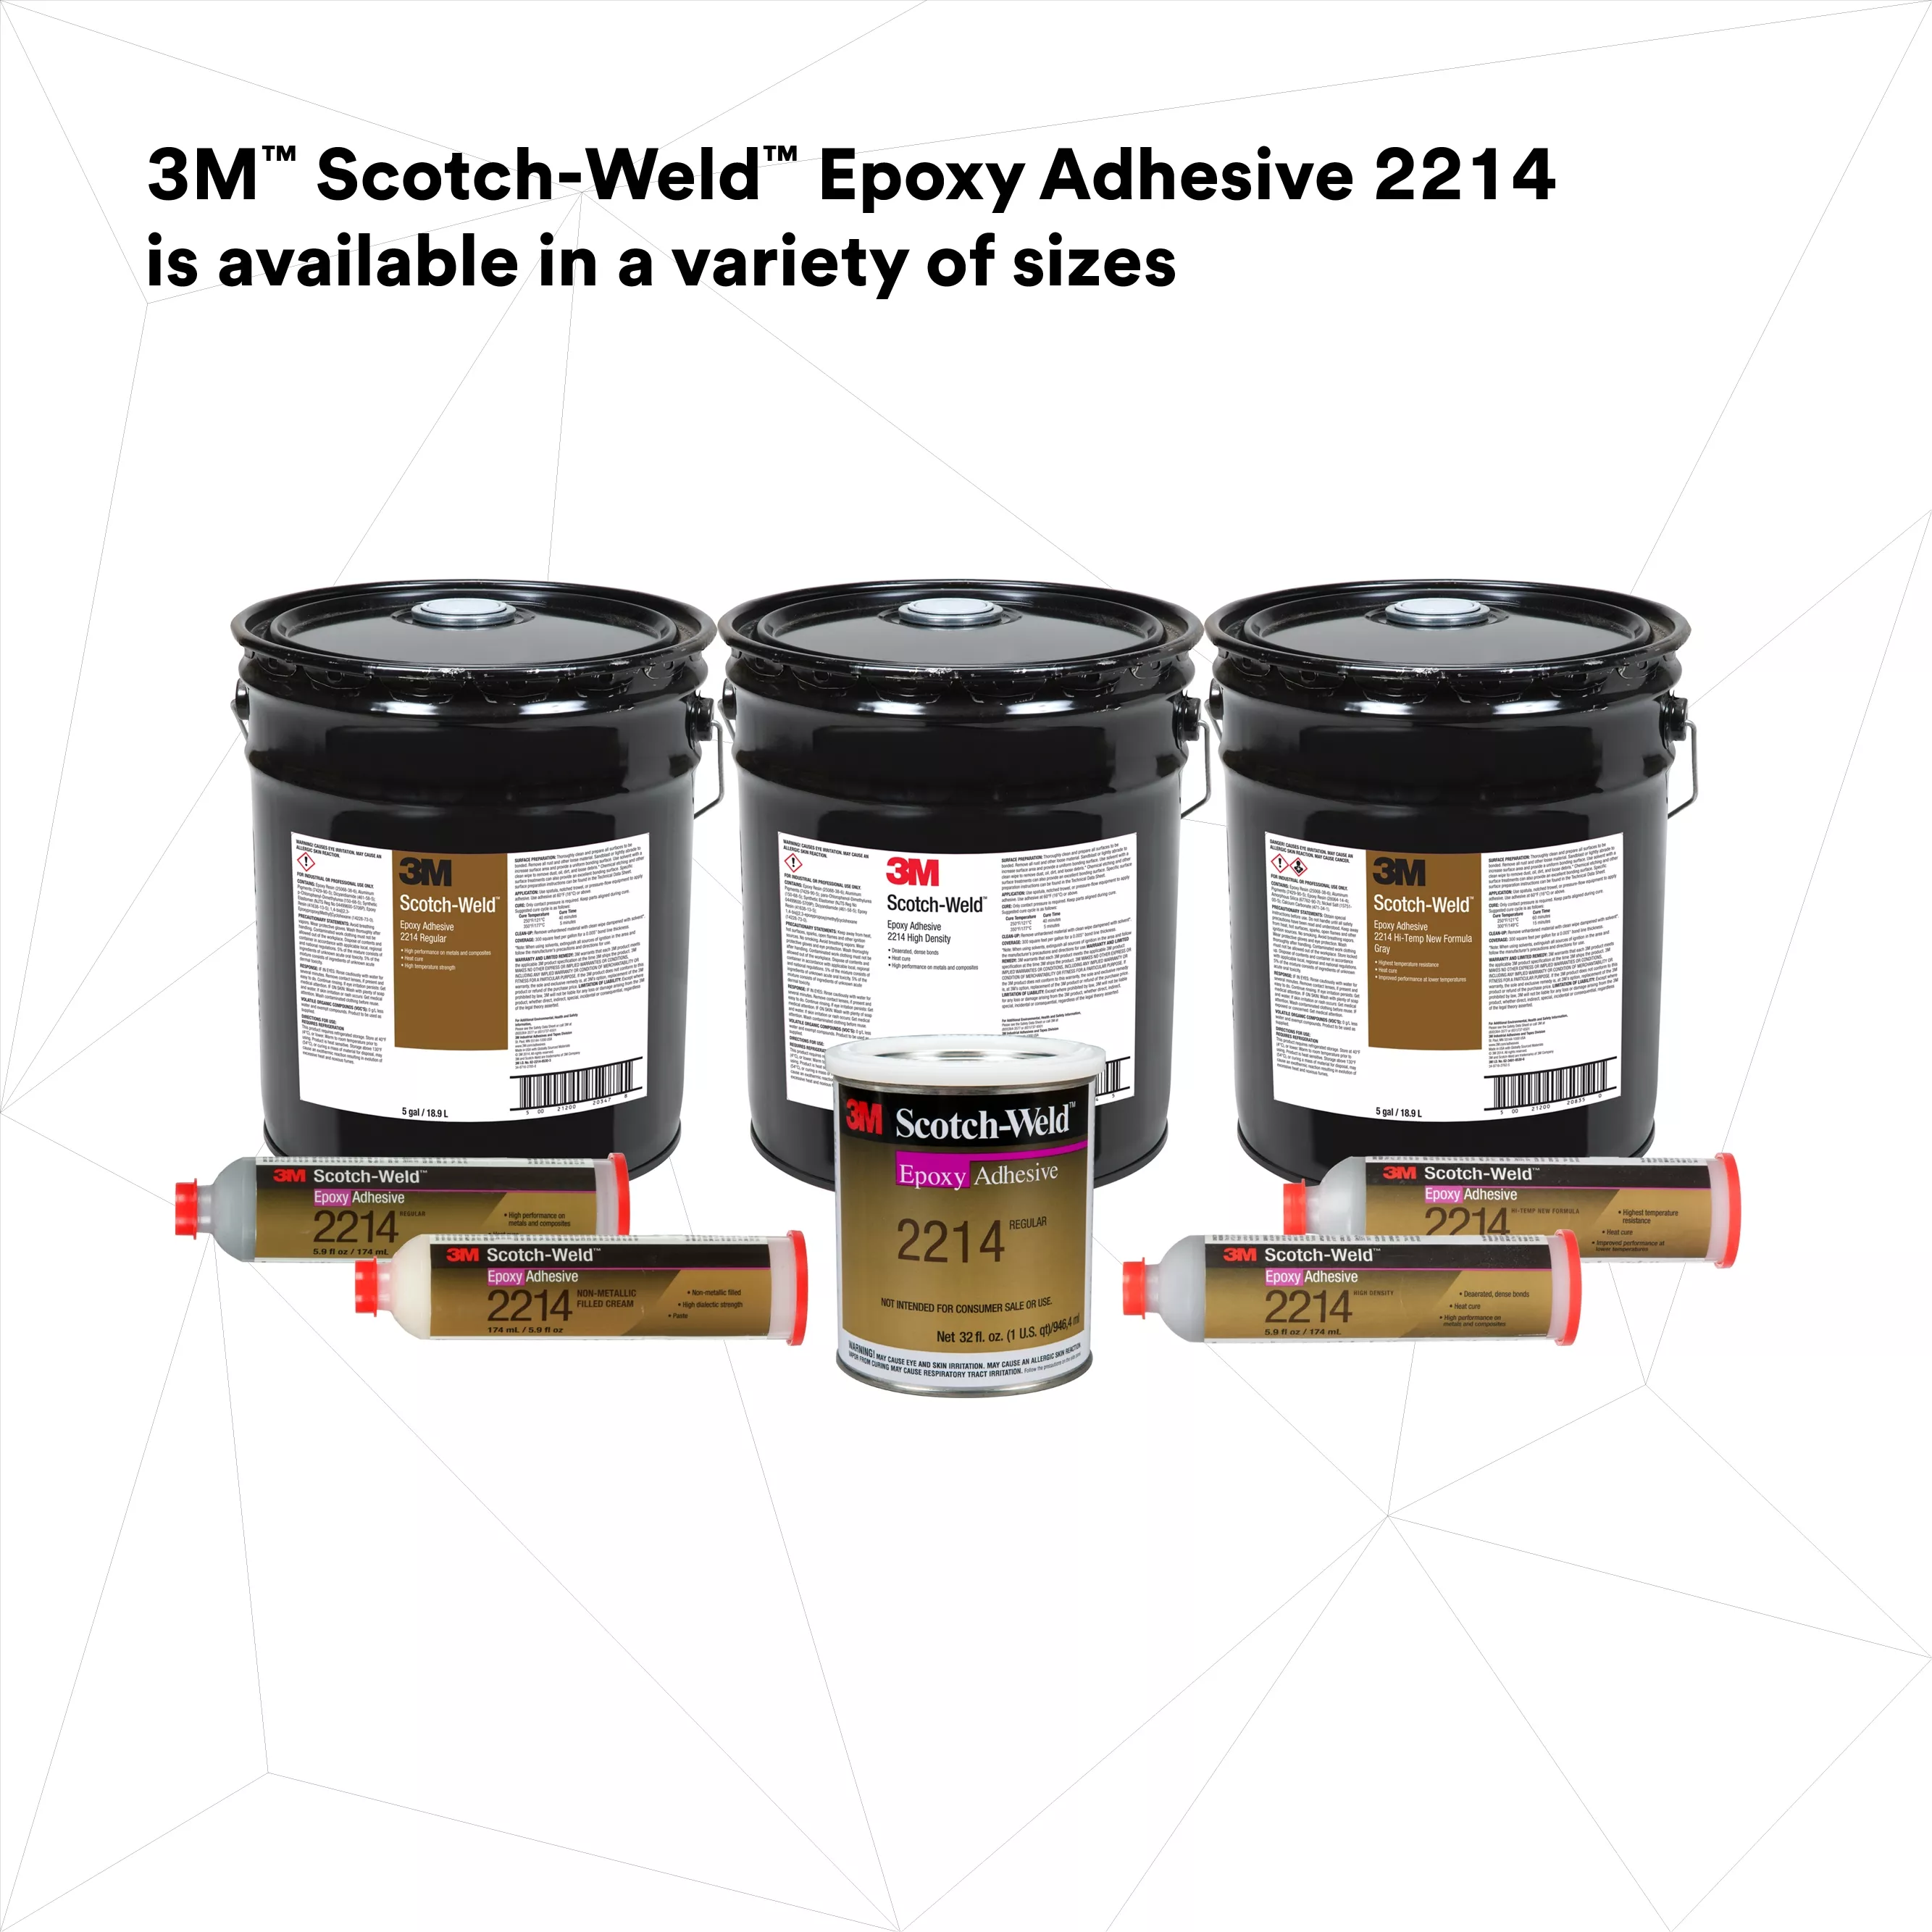 SKU 7000046474 | 3M™ Scotch-Weld™ Epoxy Adhesive 2214